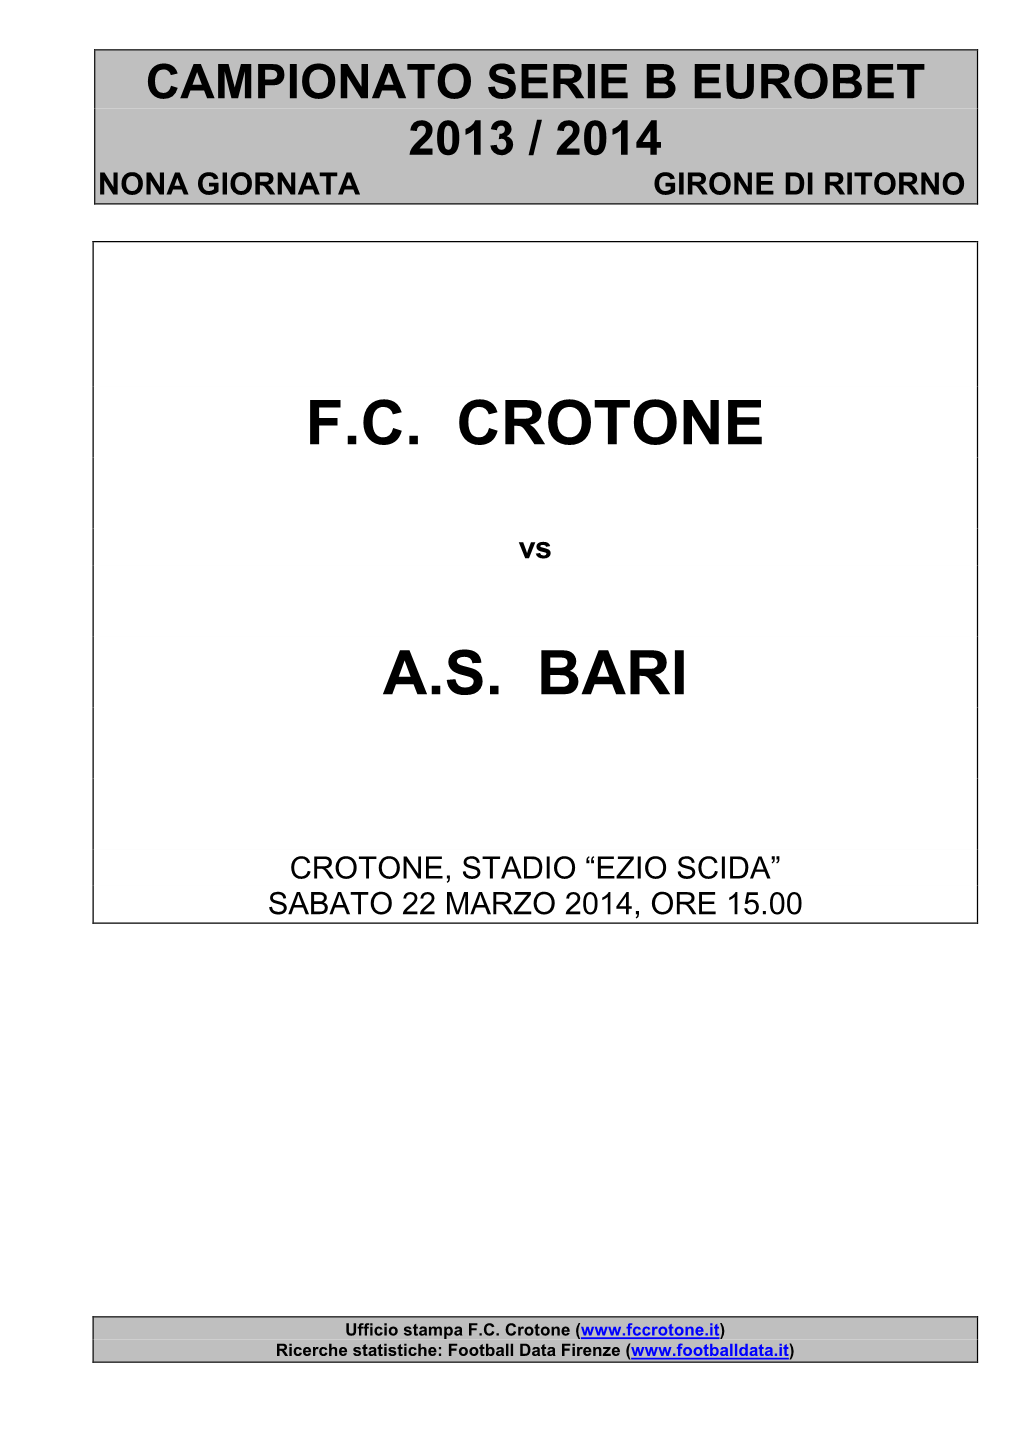 Crotone-Bari